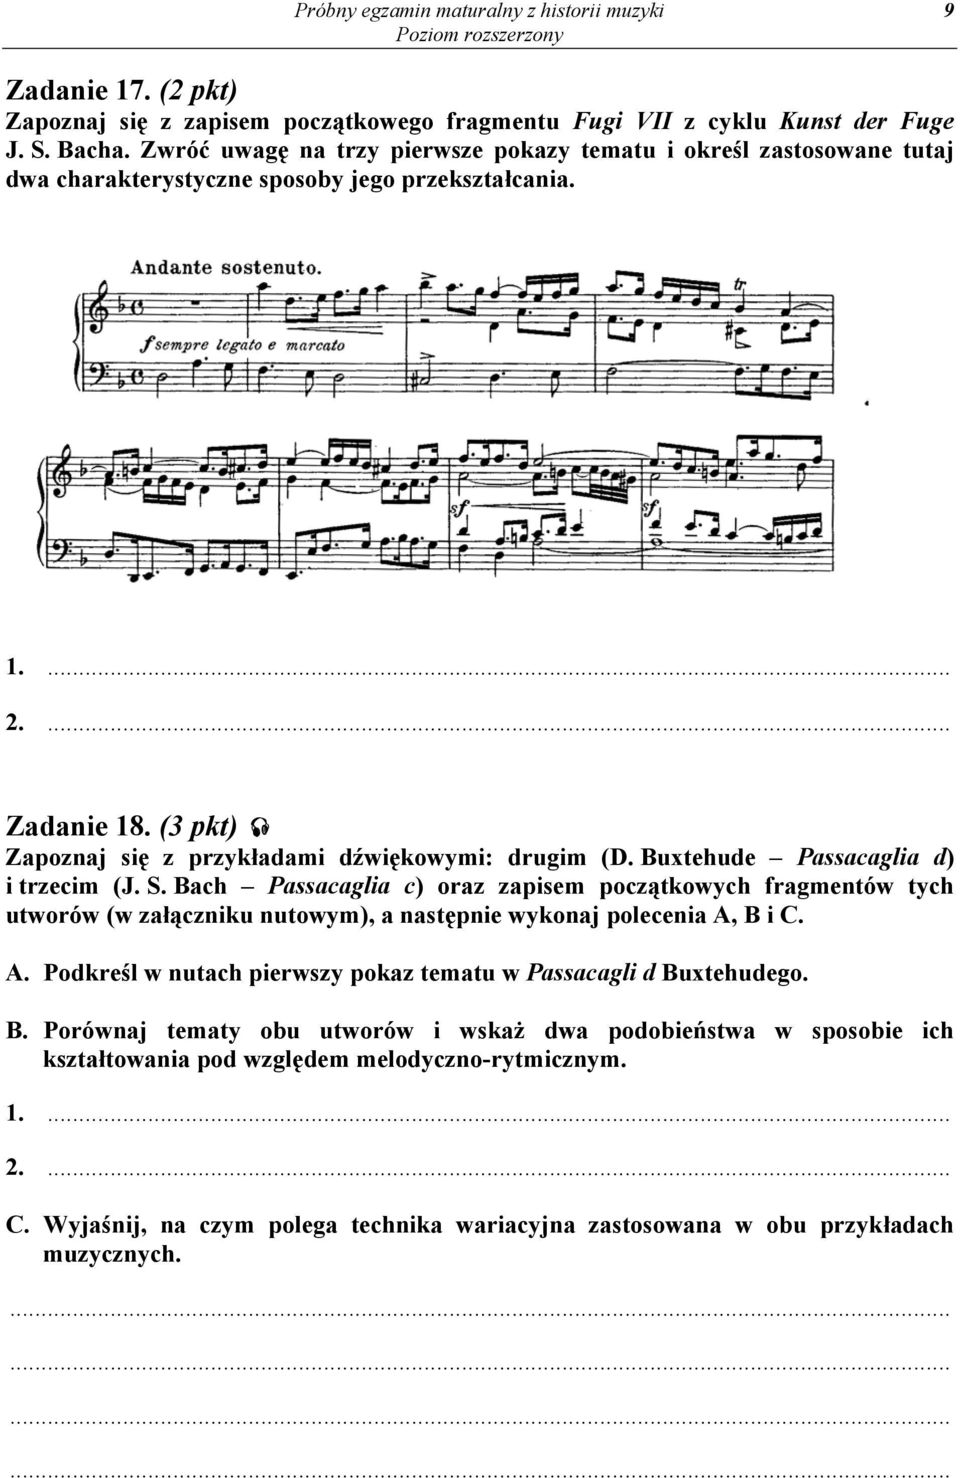 (3 pkt) Zapoznaj się z przykładami dźwiękowymi: drugim (D. Buxtehude Passacaglia d) i trzecim (J. S.